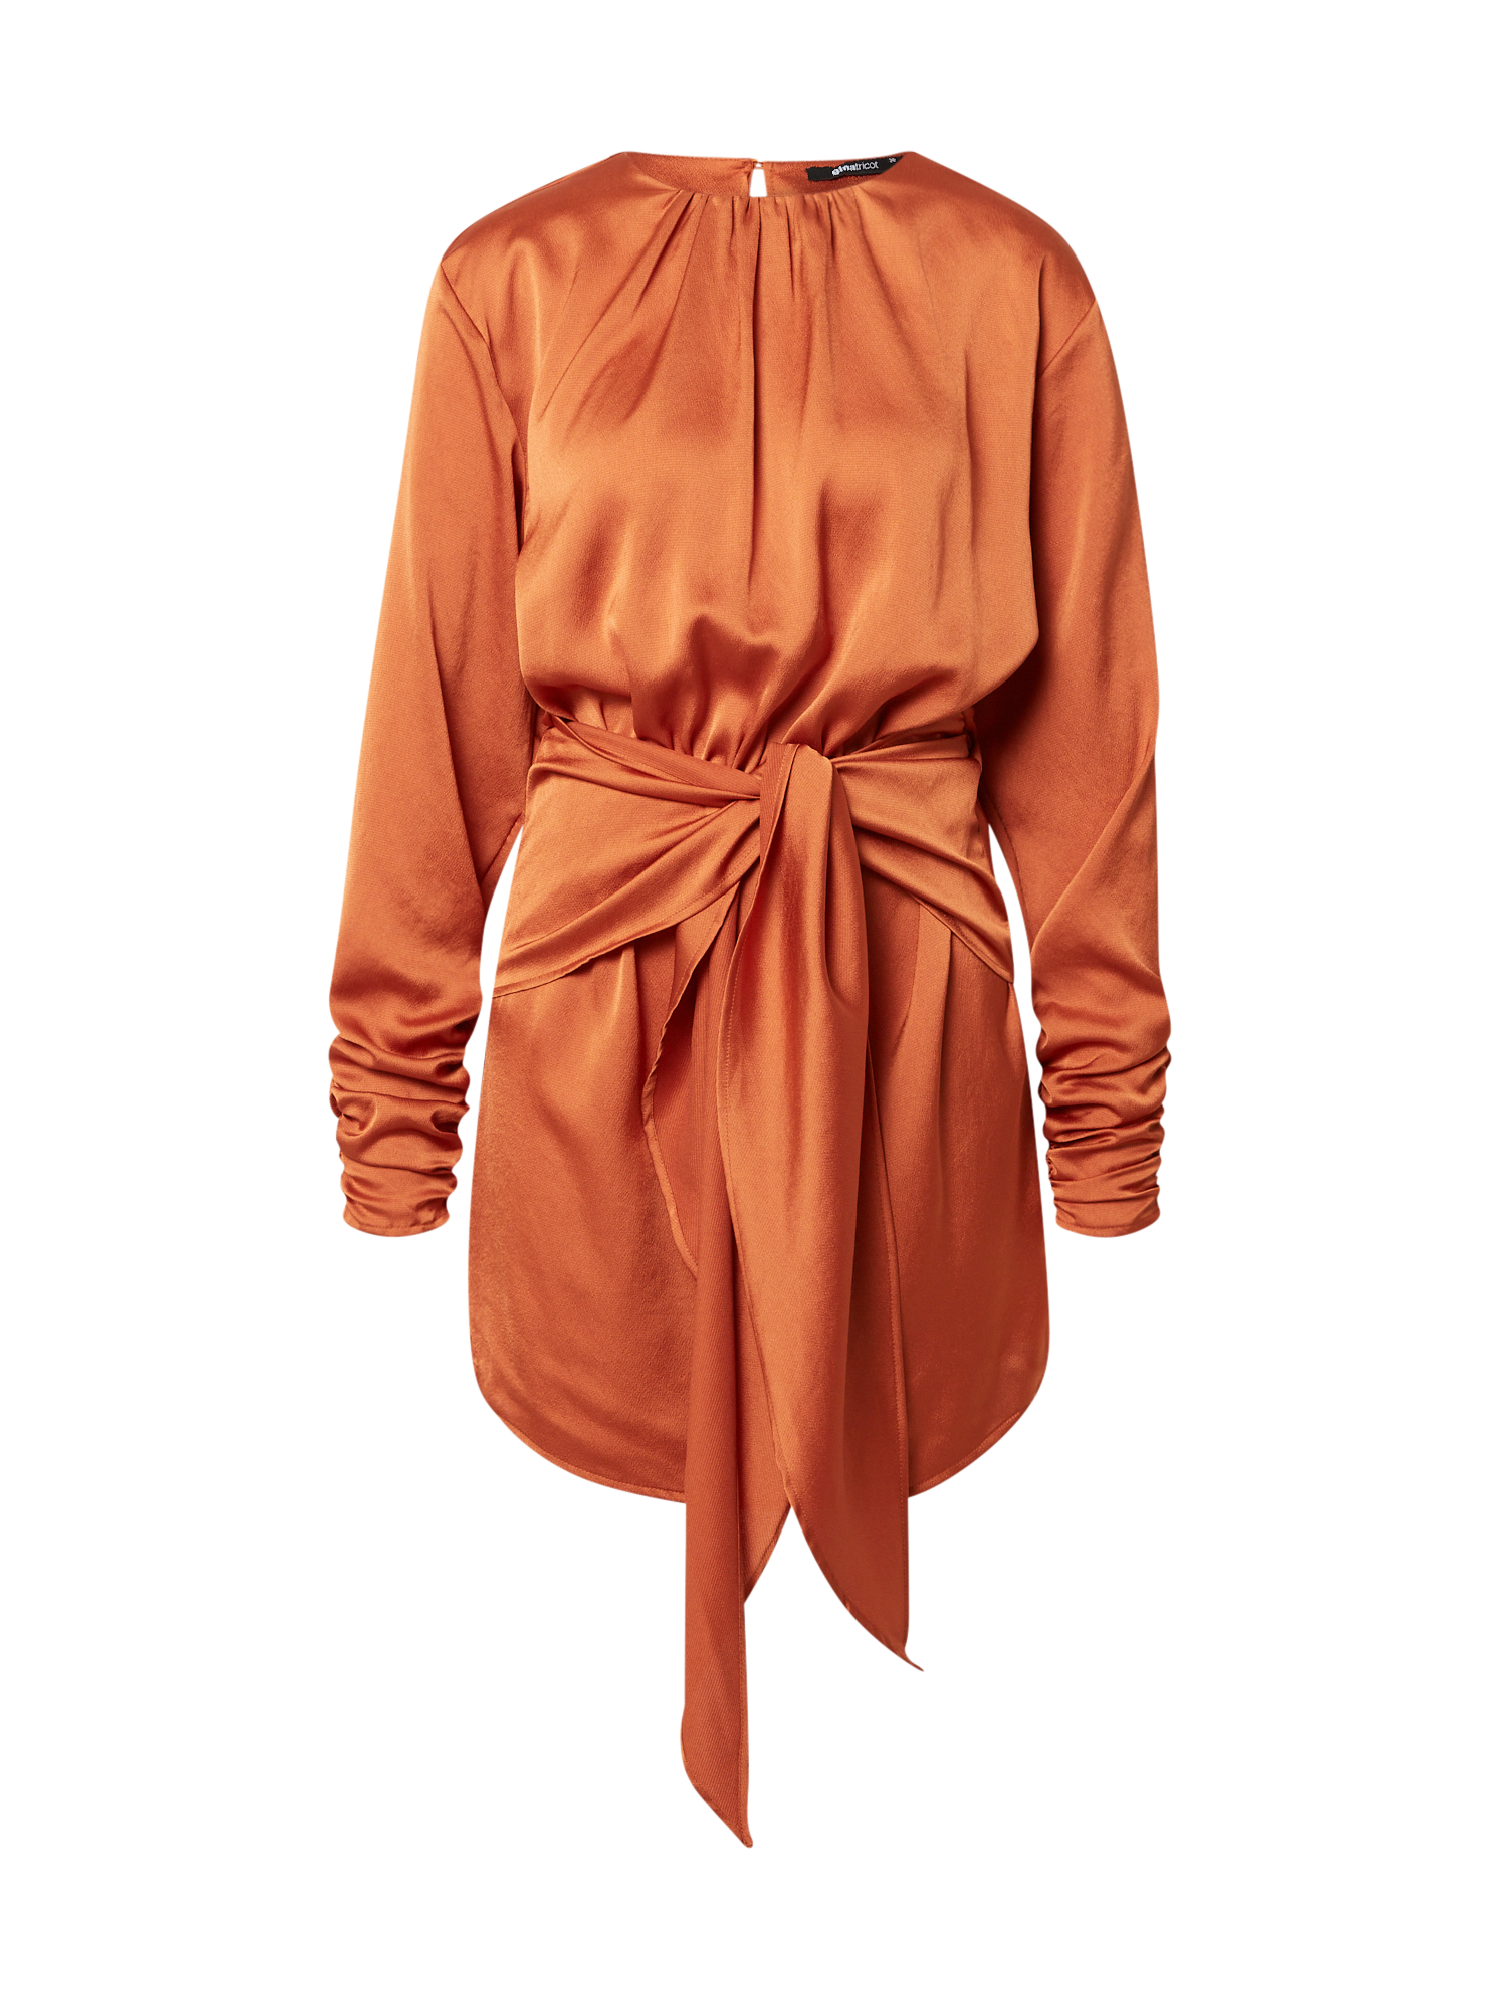 Kobiety jyuOj Gina Tricot Sukienka koktajlowa Jonna w kolorze Ciemnopomarańczowym 